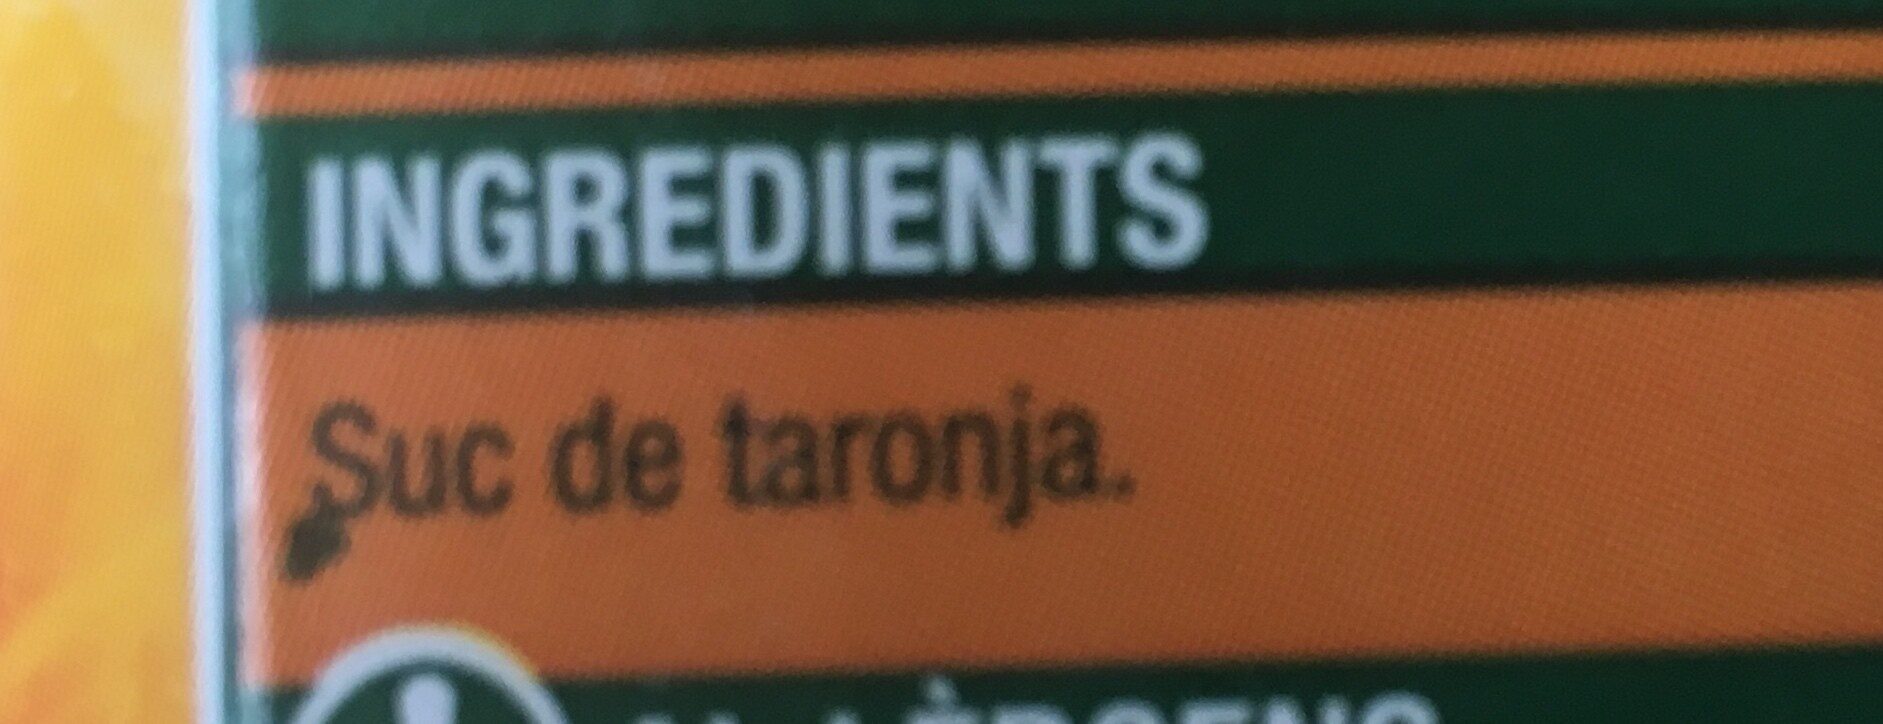 Suc de taronja Bonpreu - Ingredients